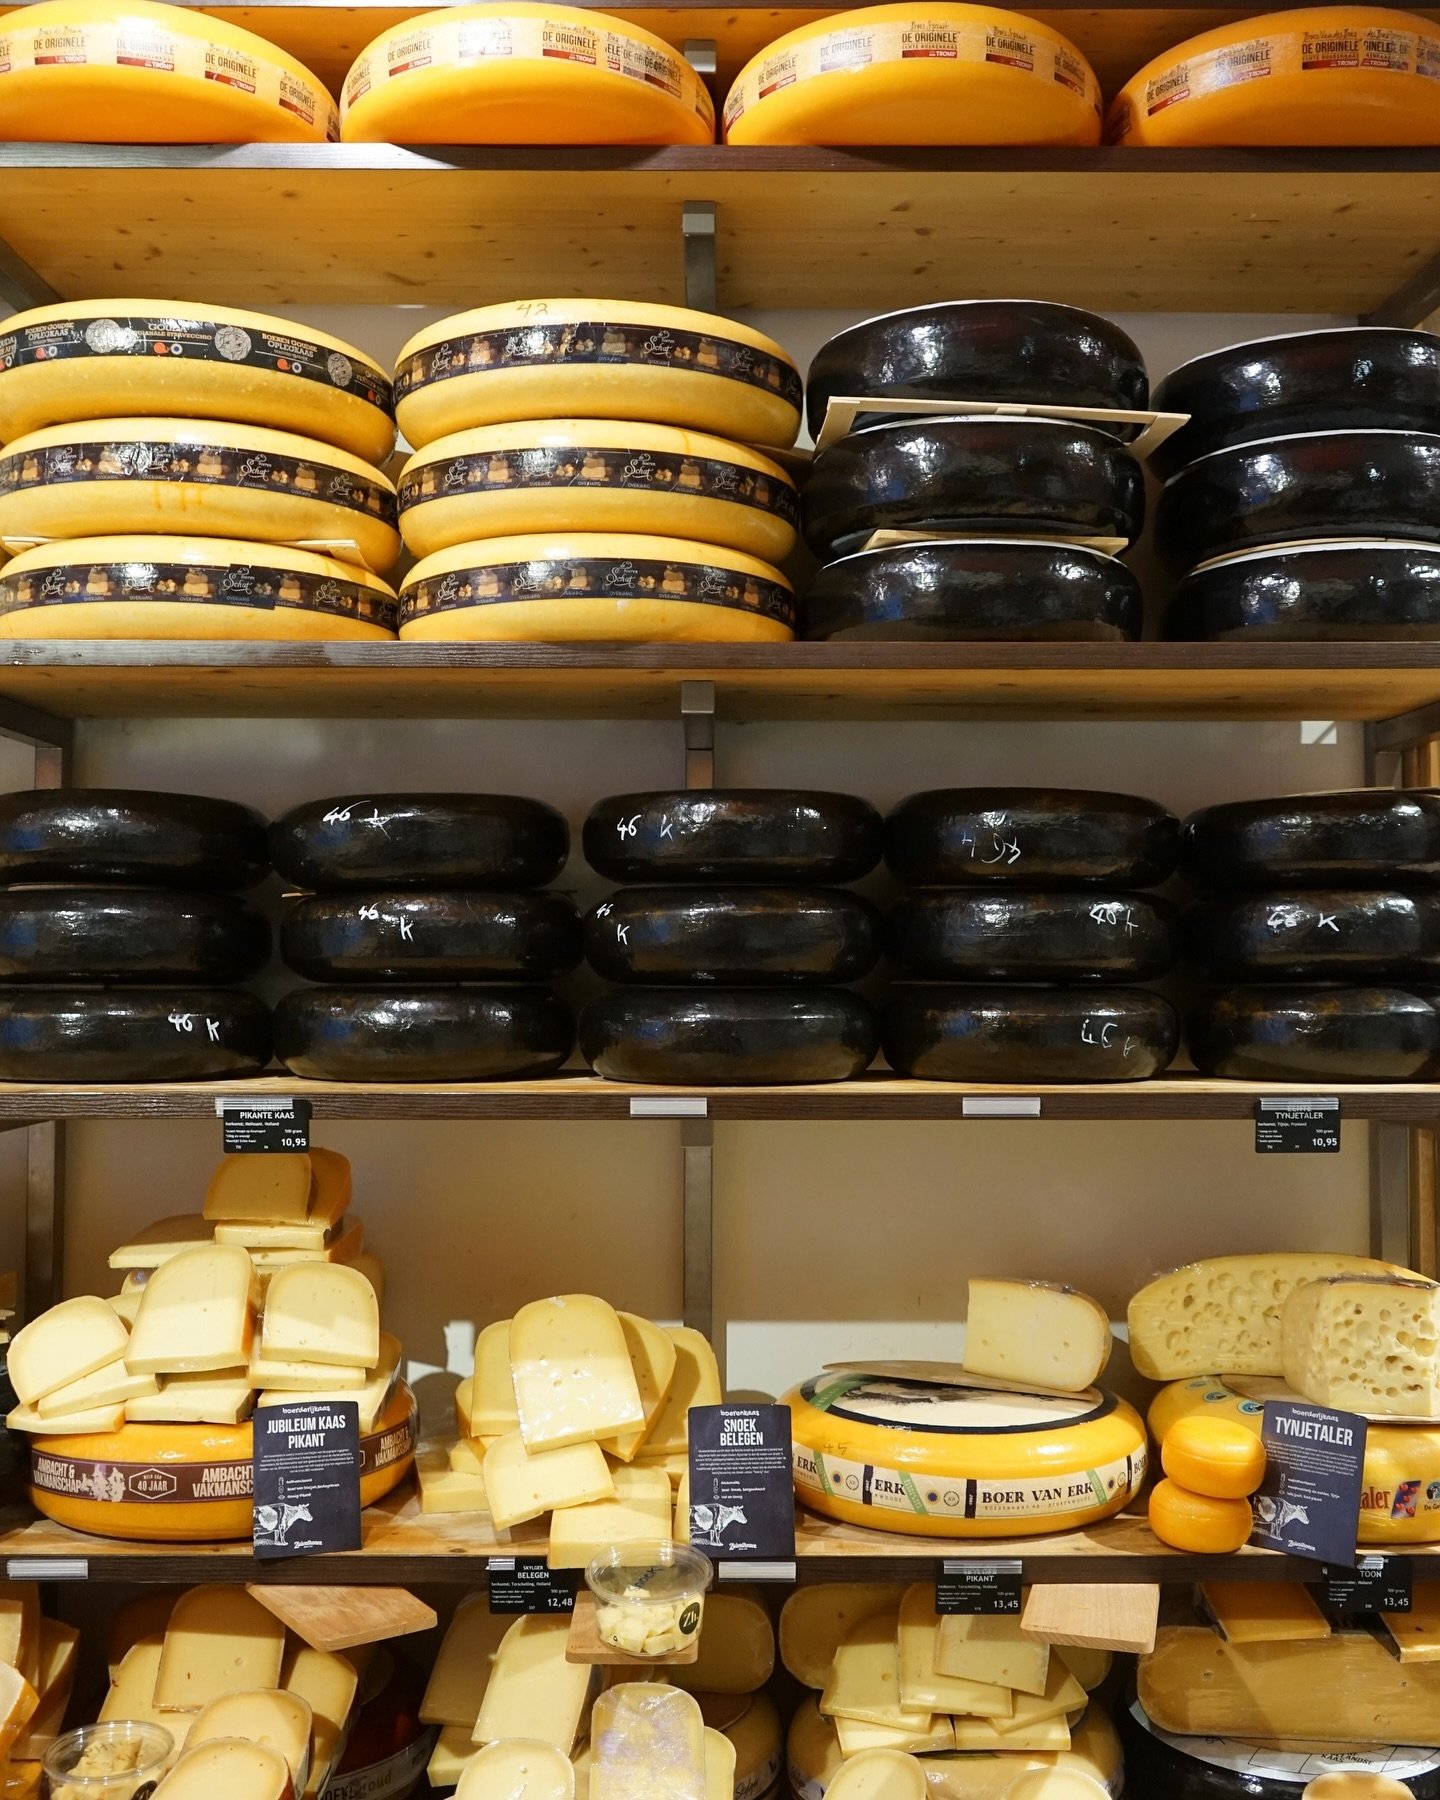 Wist je dat er meer dan 2000 verschillende soorten kaas zijn wereldwijd? Van romige brie tot pittige cheddar, kaas is een ware smaaksensatie! En wist je dat Nederland een van de grootste kaasproducenten ter wereld is? 🧀✨

Zin om een nieuwe kaas te p